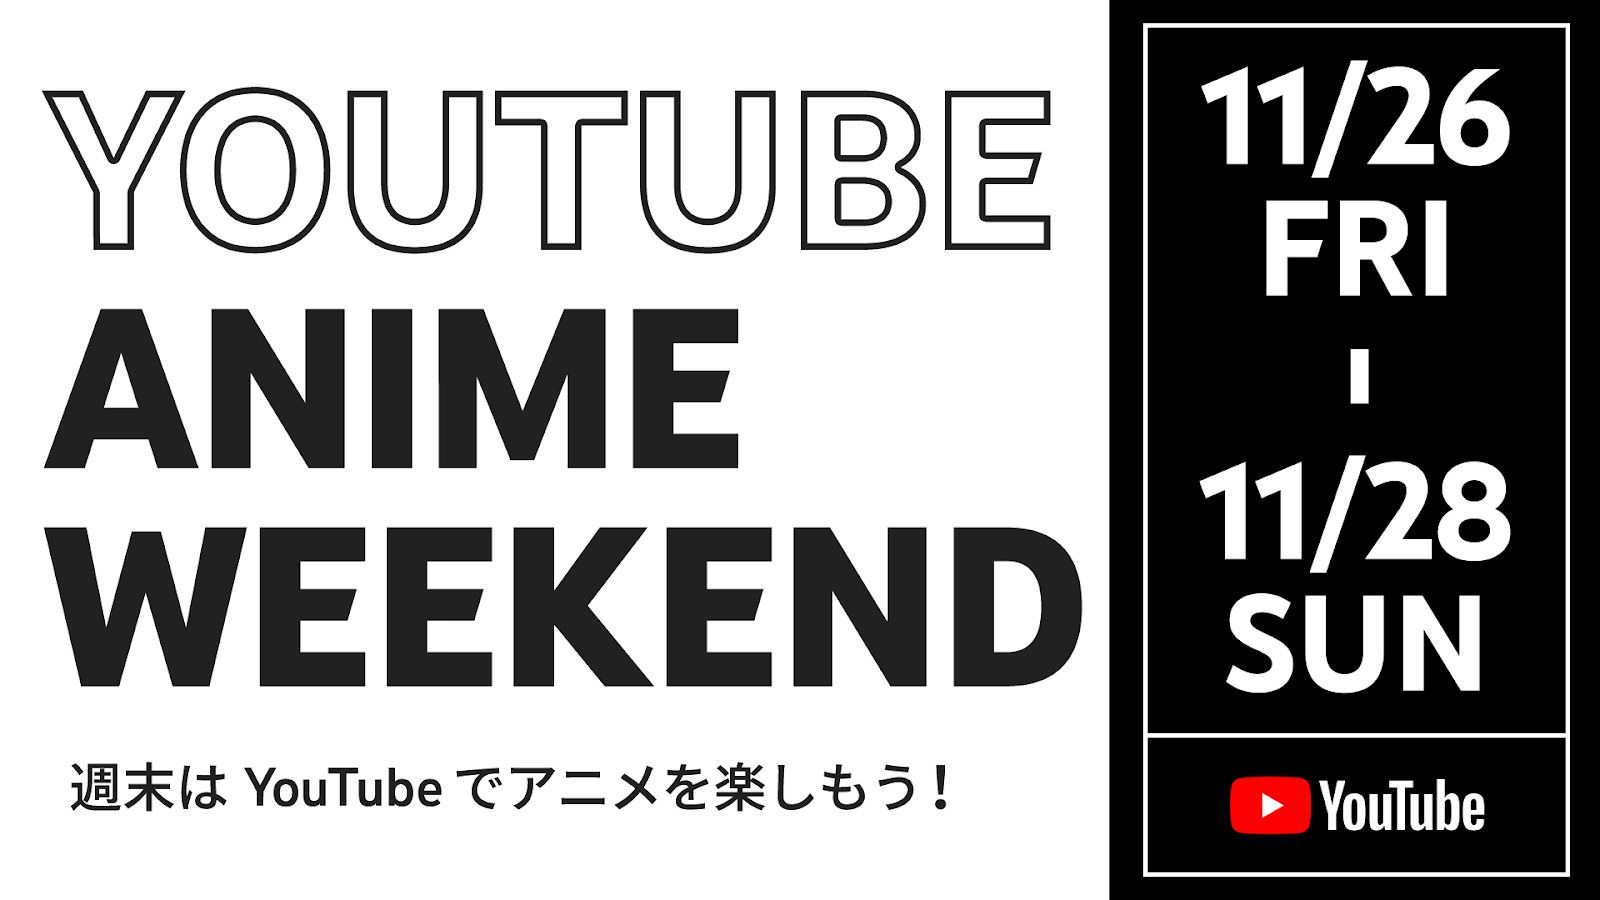 YouTube Anime Weekend